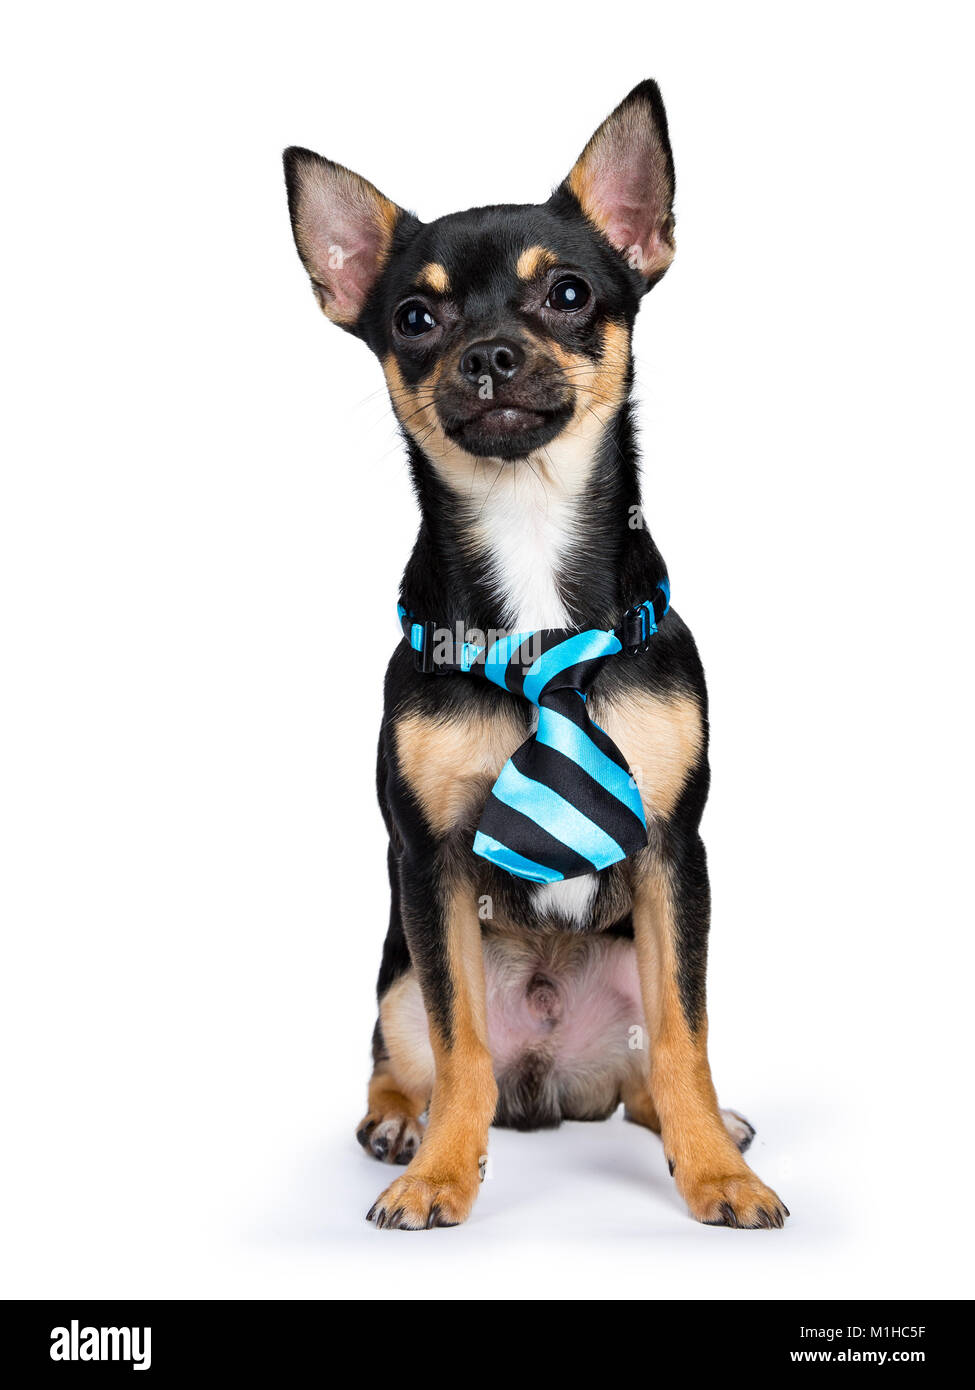 Nero chiwawa dog sitter con blue black tie guardando alla telecamera isolata su sfondo whtie Foto Stock